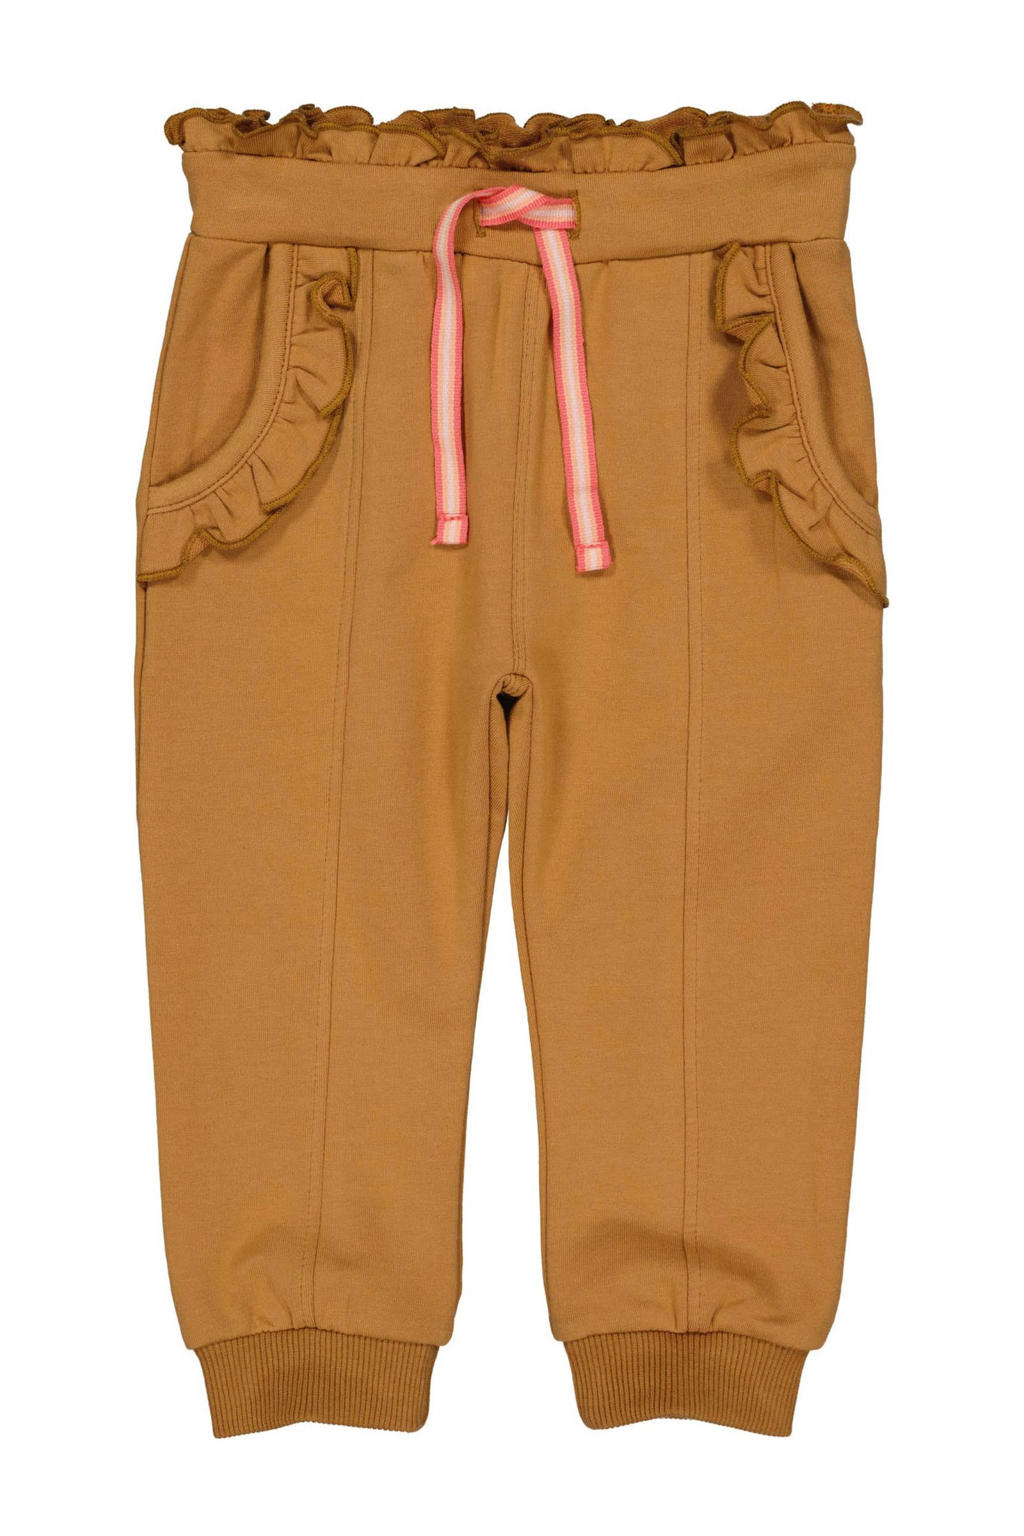 Bruine meisjes Quapi regular fit broek van stretchkatoen met elastische tailleband met koord